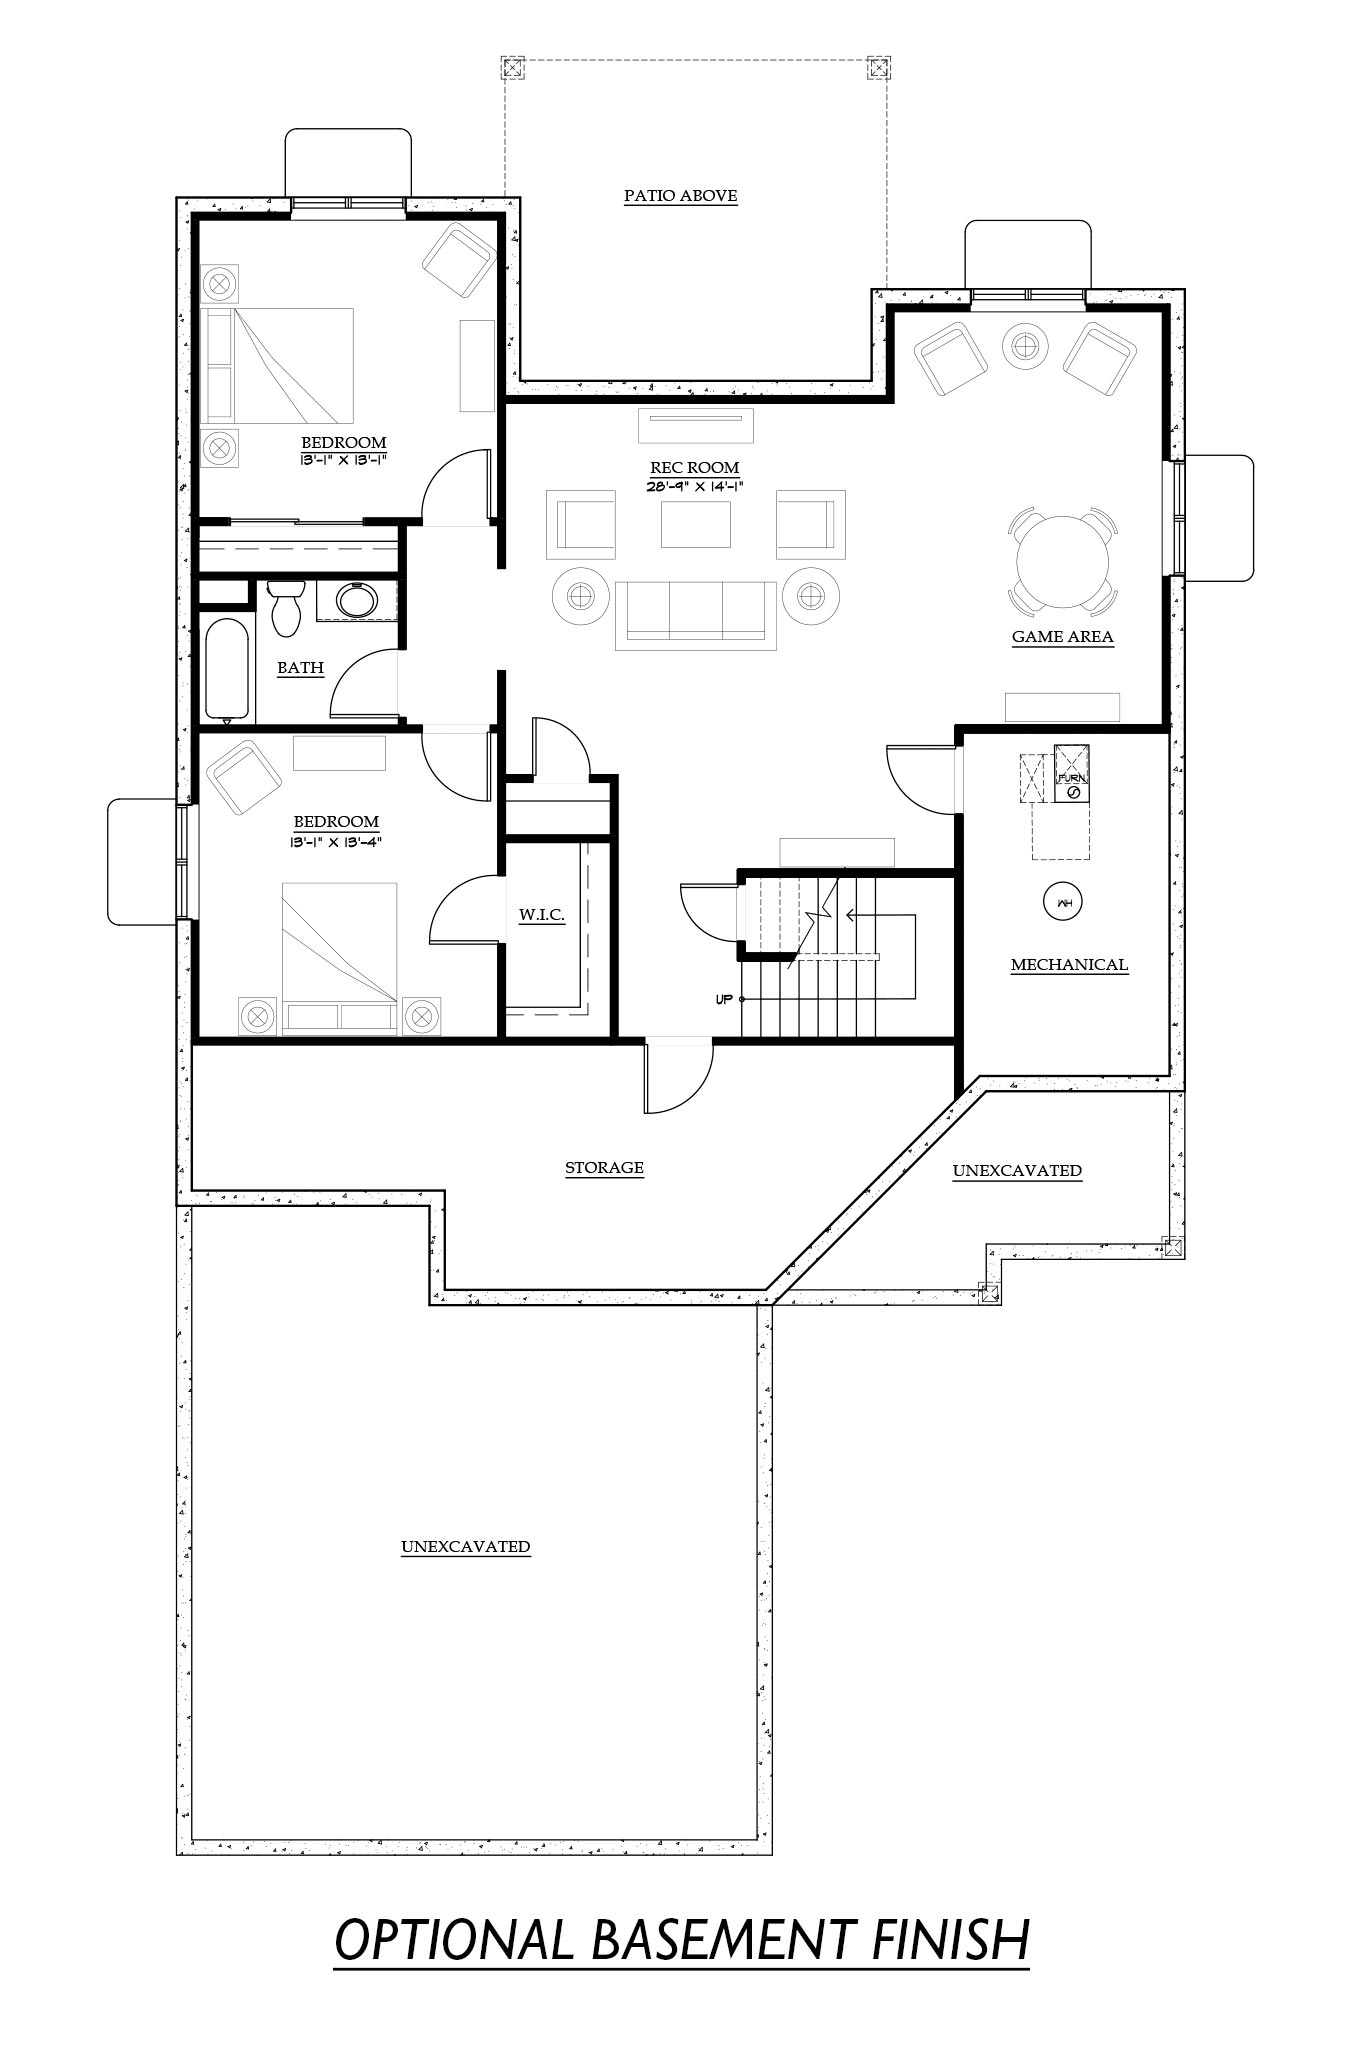 optional basement finish aspen floor plan